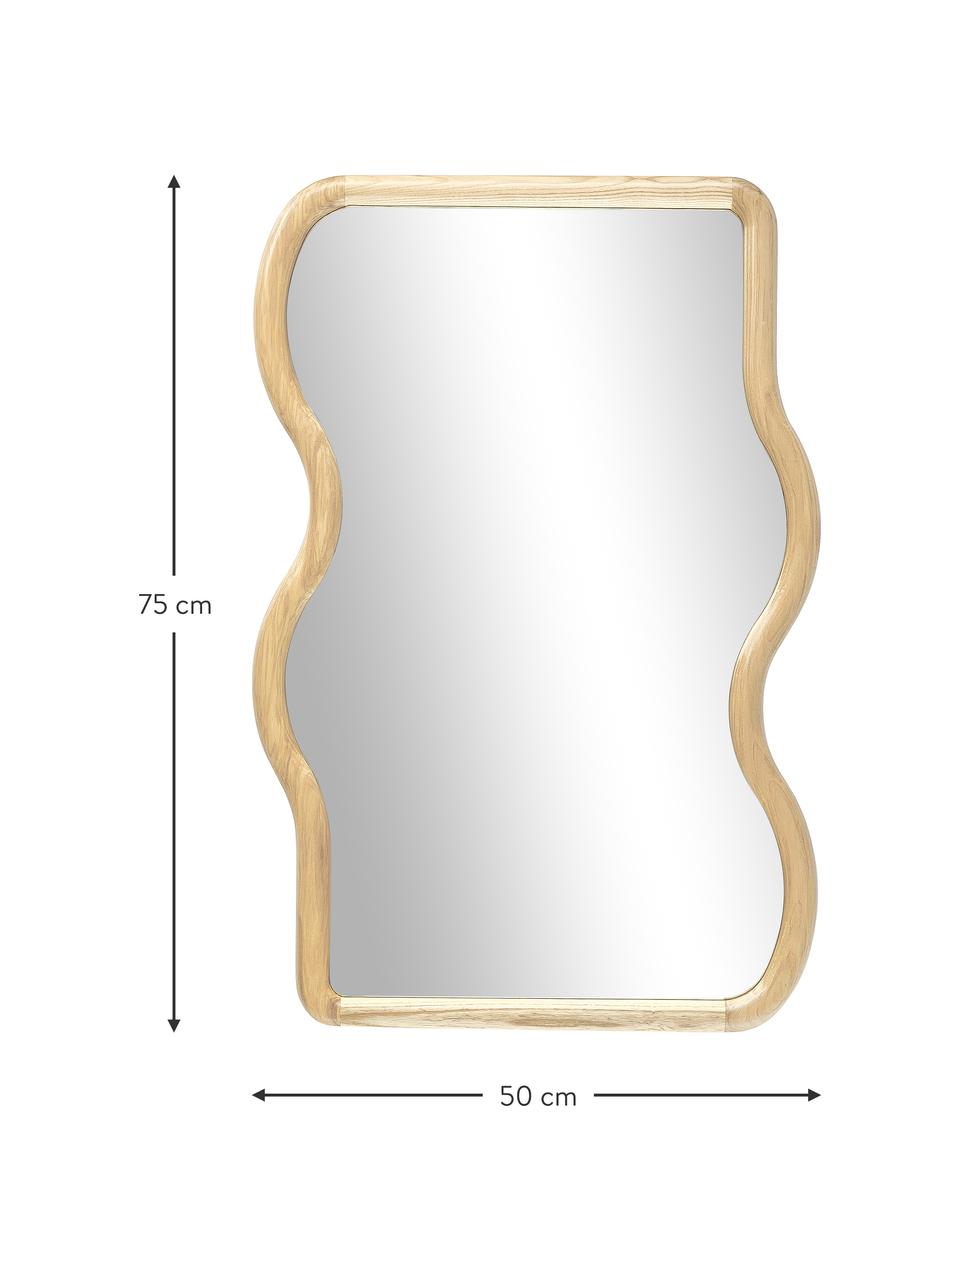 Wellenförmiger Wandspiegel Stream aus Holz, Rahmen: Eschenholz, Spiegelfläche: Spiegelglas, Rückseite: Mitteldichte Holzfaserpla, Beige, B 50 x H 75 cm